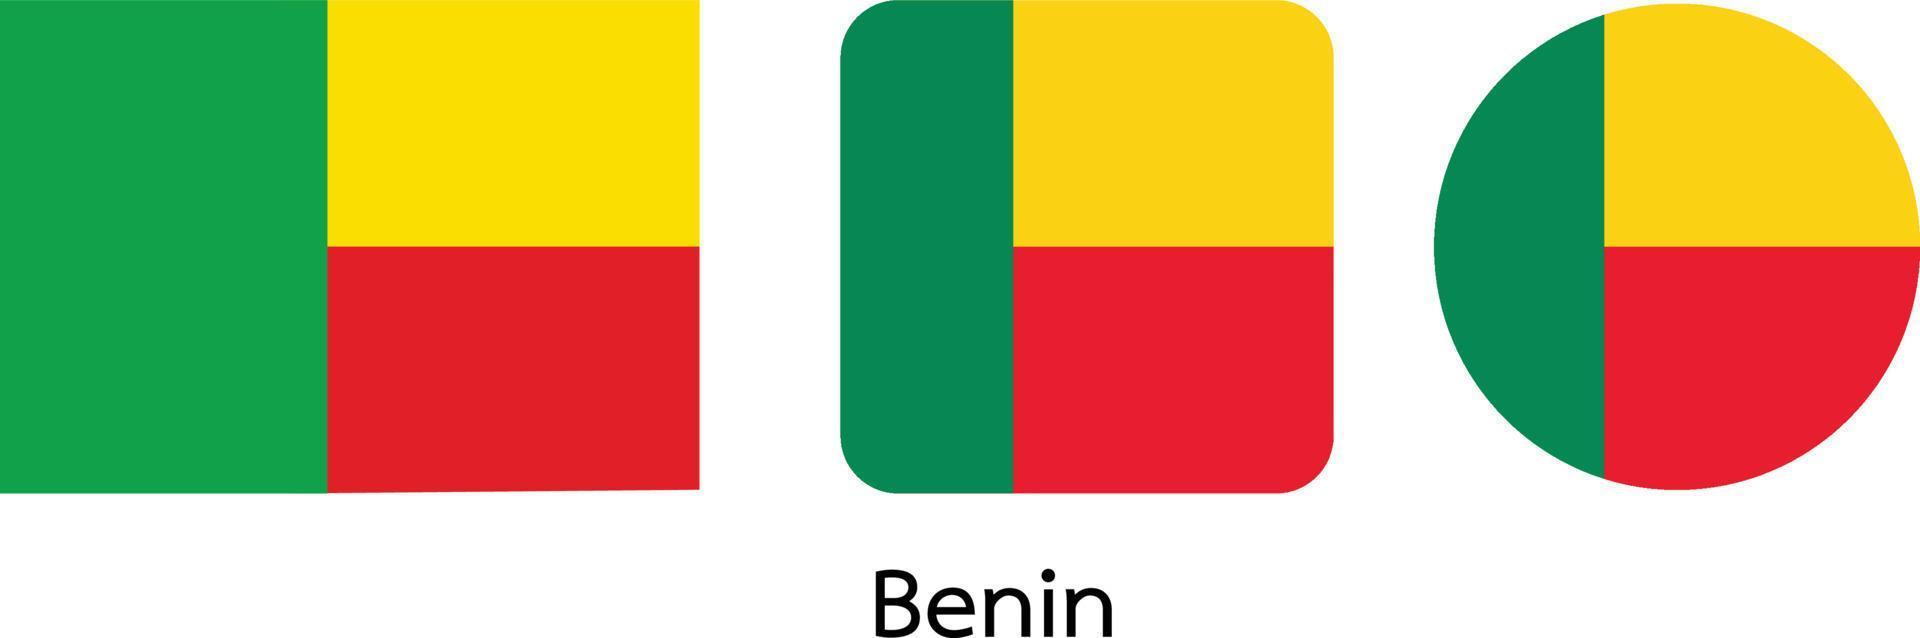 bandiera del benin, illustrazione vettoriale